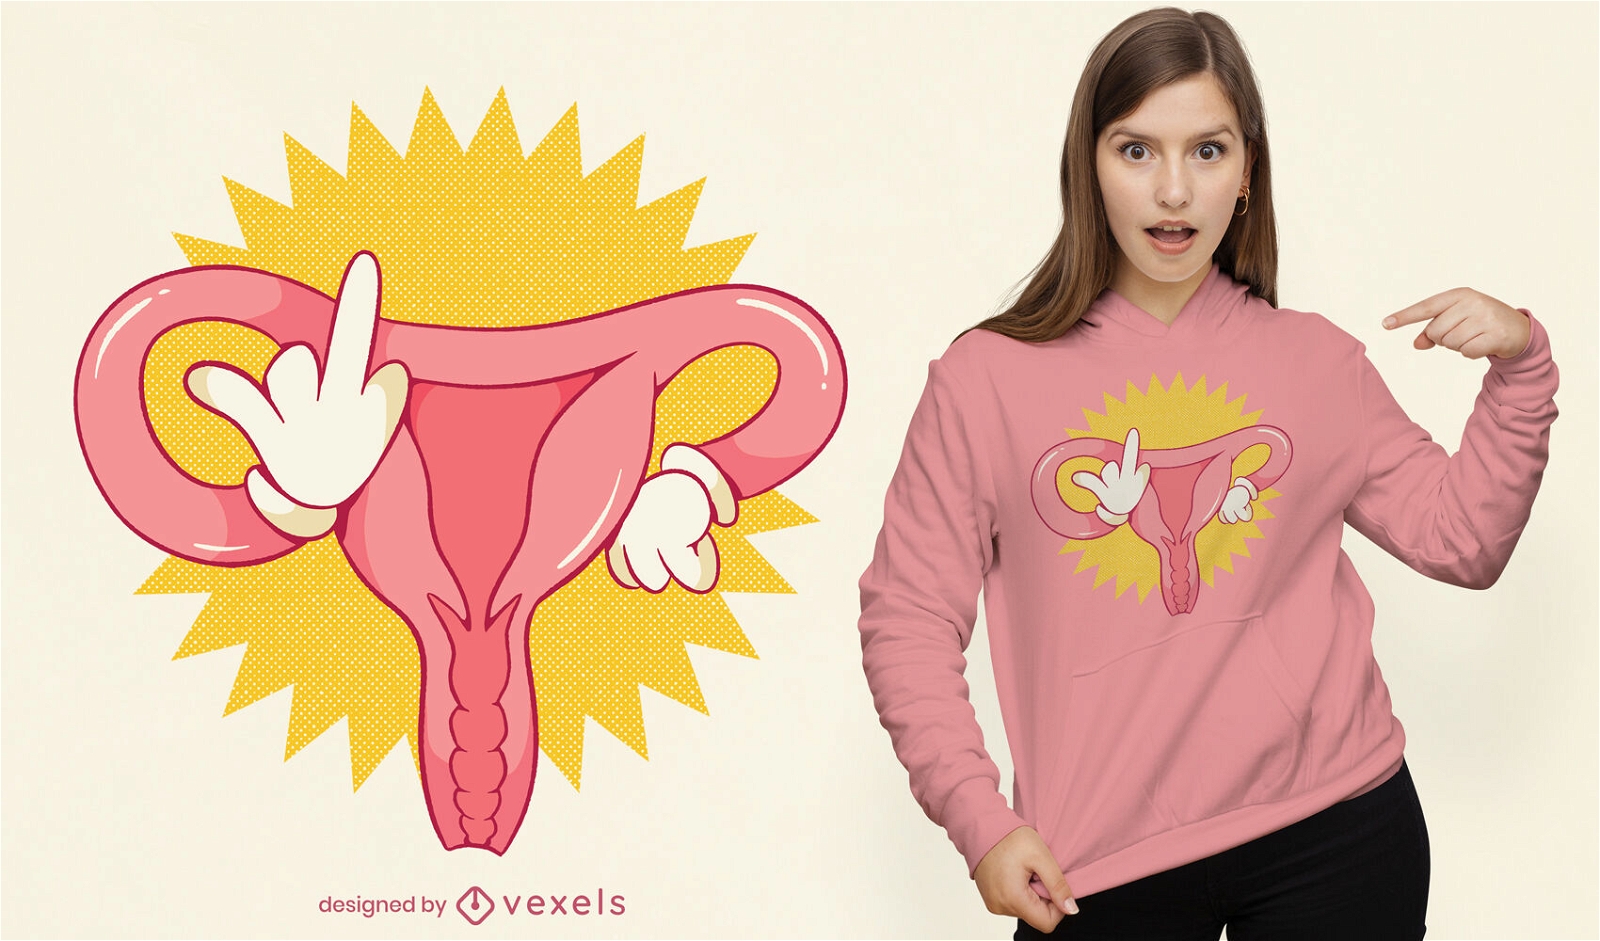 W?tendes feministisches T-Shirt-Design der Geb?rmutter